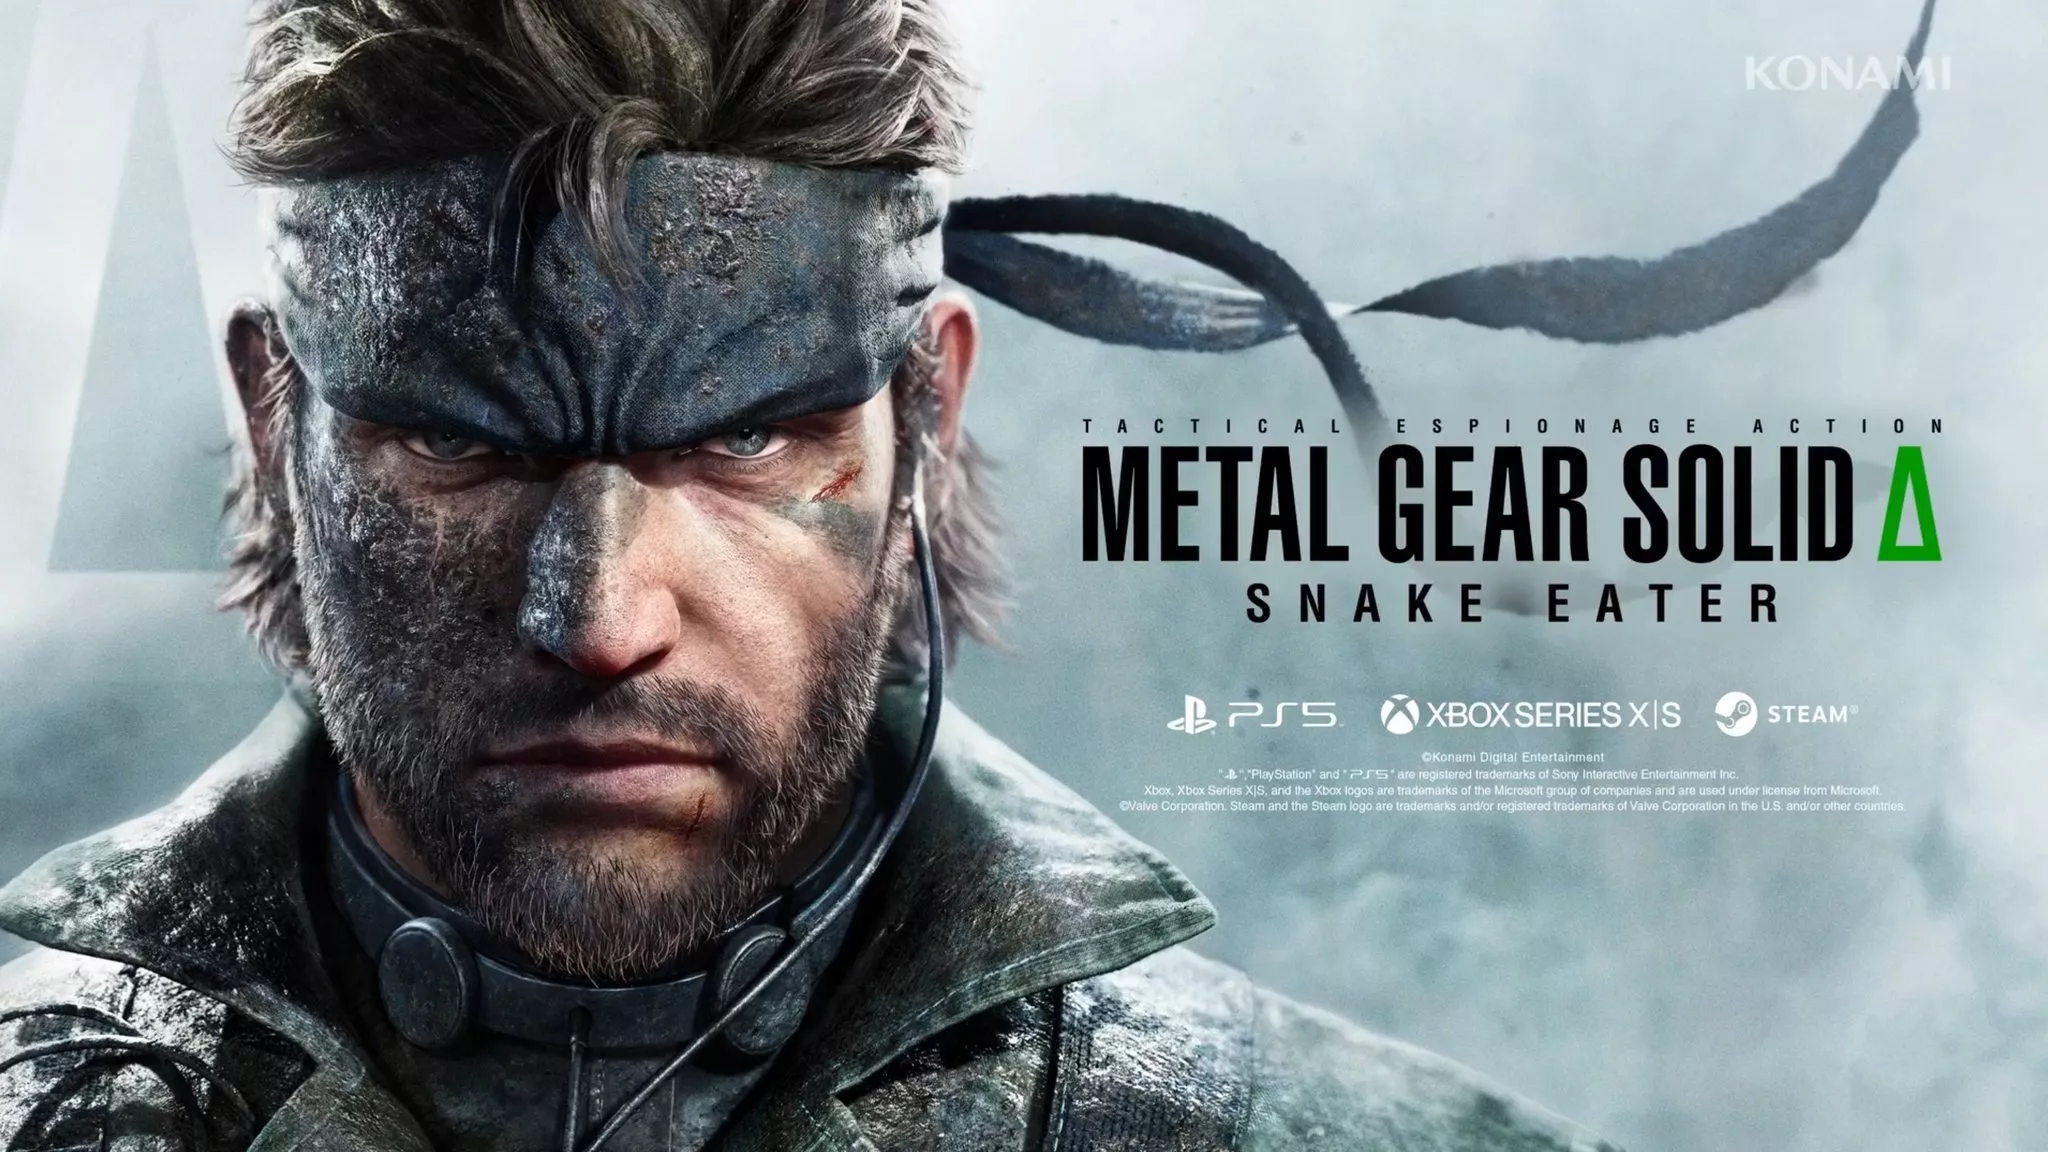 Metal Gear Solid Delta: Snake Eater - Der dritte Teil der Metal Gear Solid-Reihe erhält ein Remake Heropic